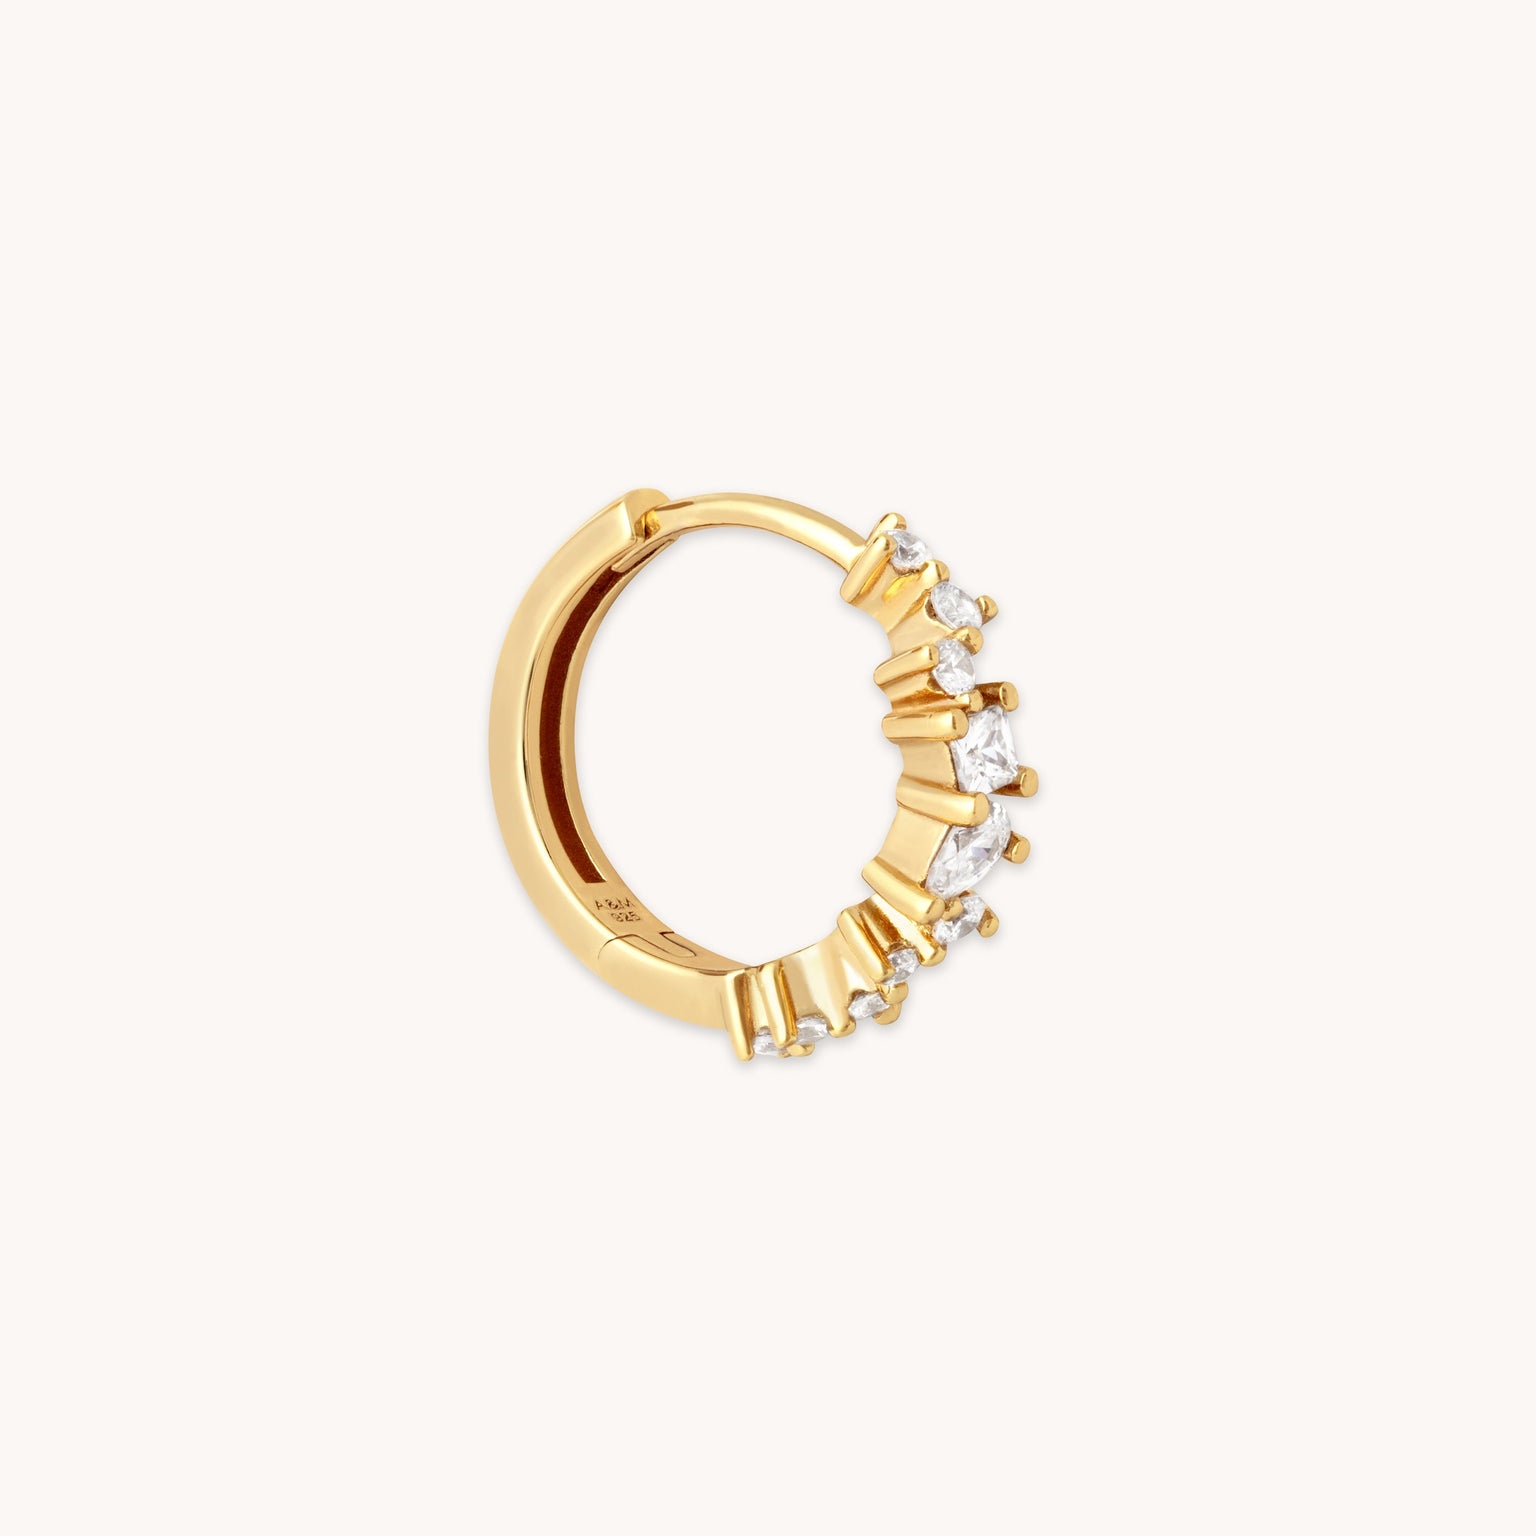 Celestial Gold 11.5mm Hoop | Astrid & Miyu Earrings